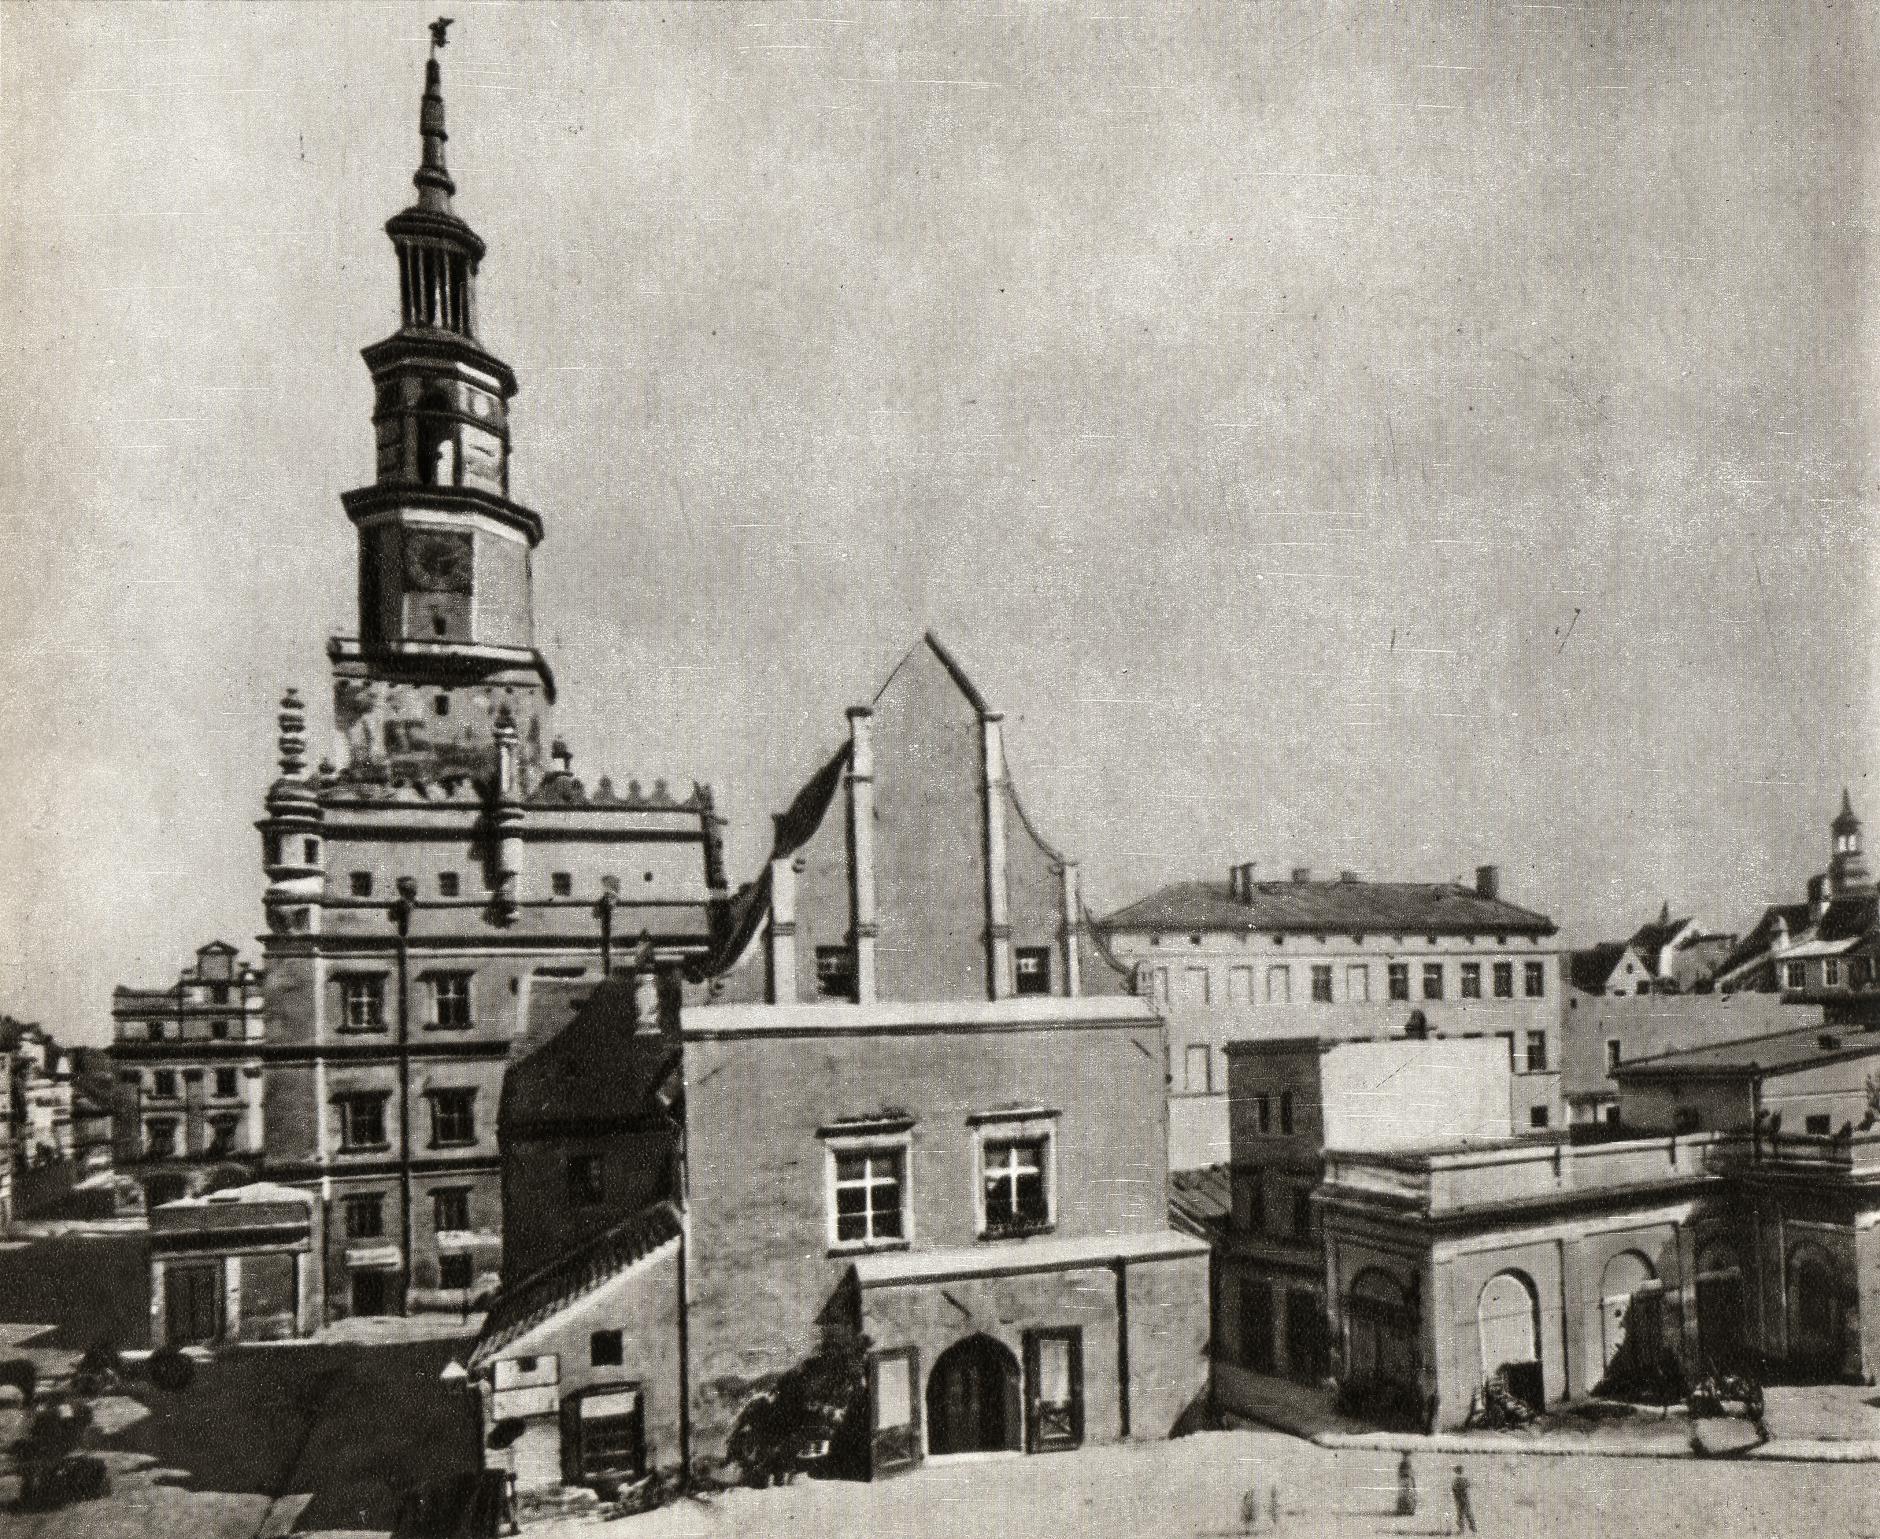 (1880-1890) Stary Rynek od zachodu przed rozbiórką budynku Wagi Miejskiej.